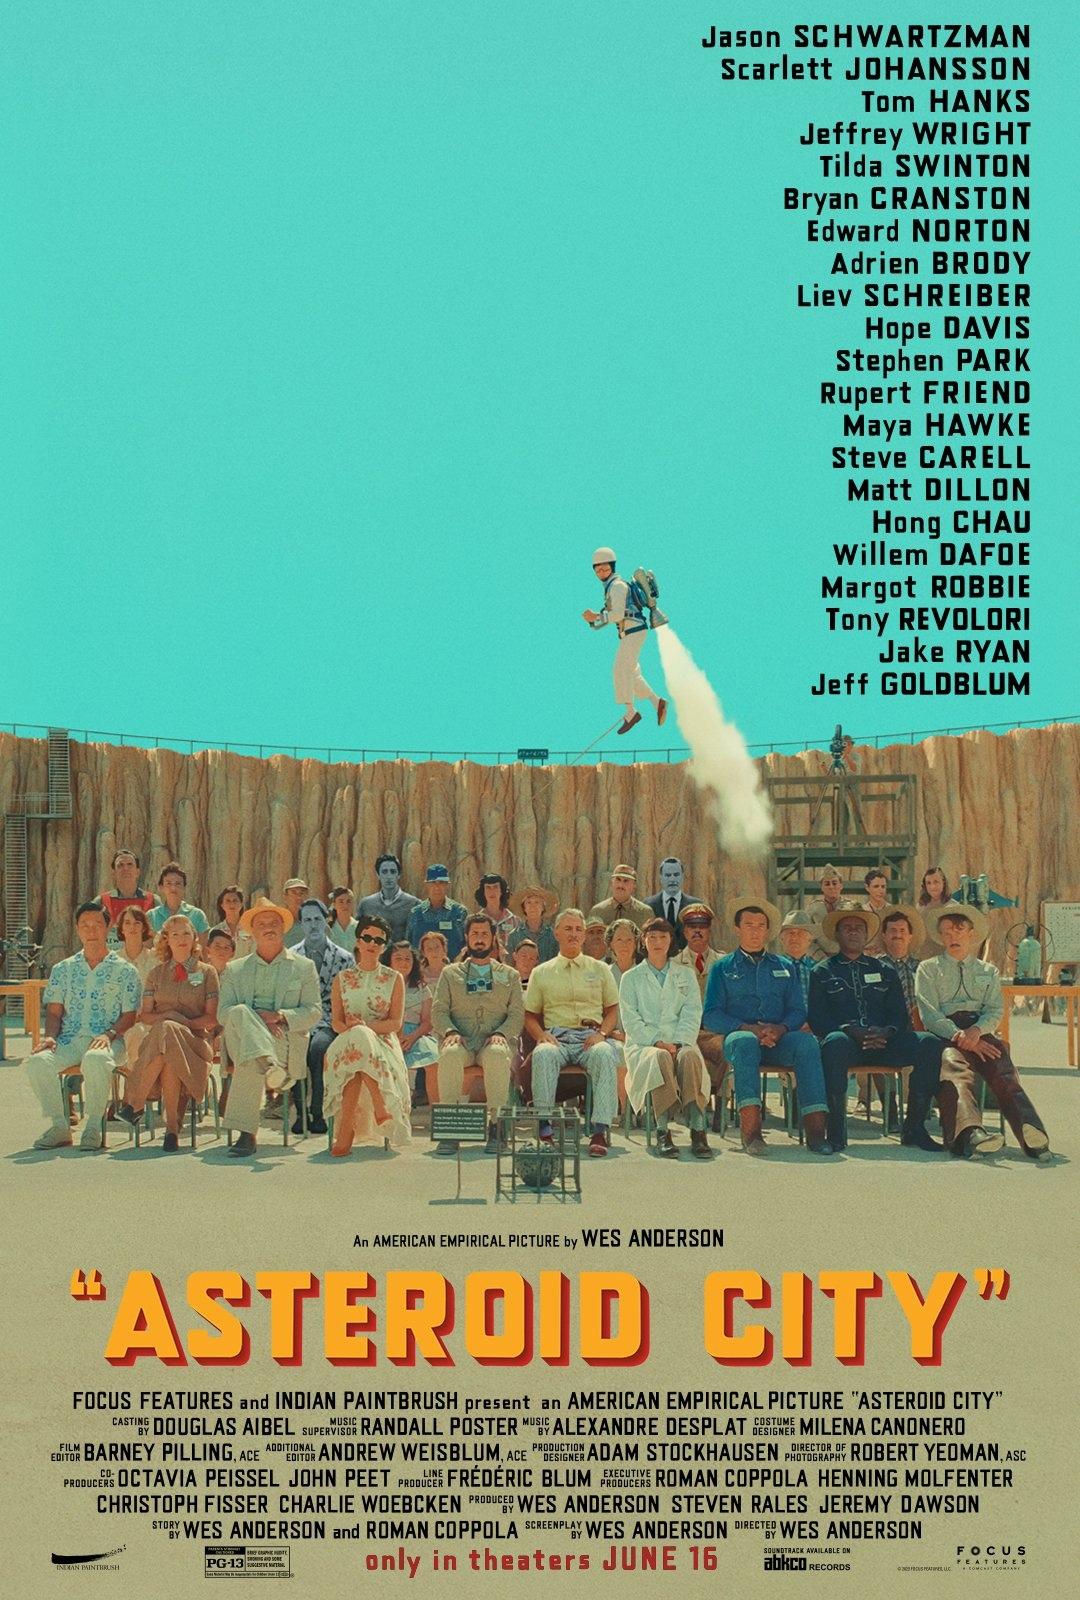 Город астероидов
Asteroid City